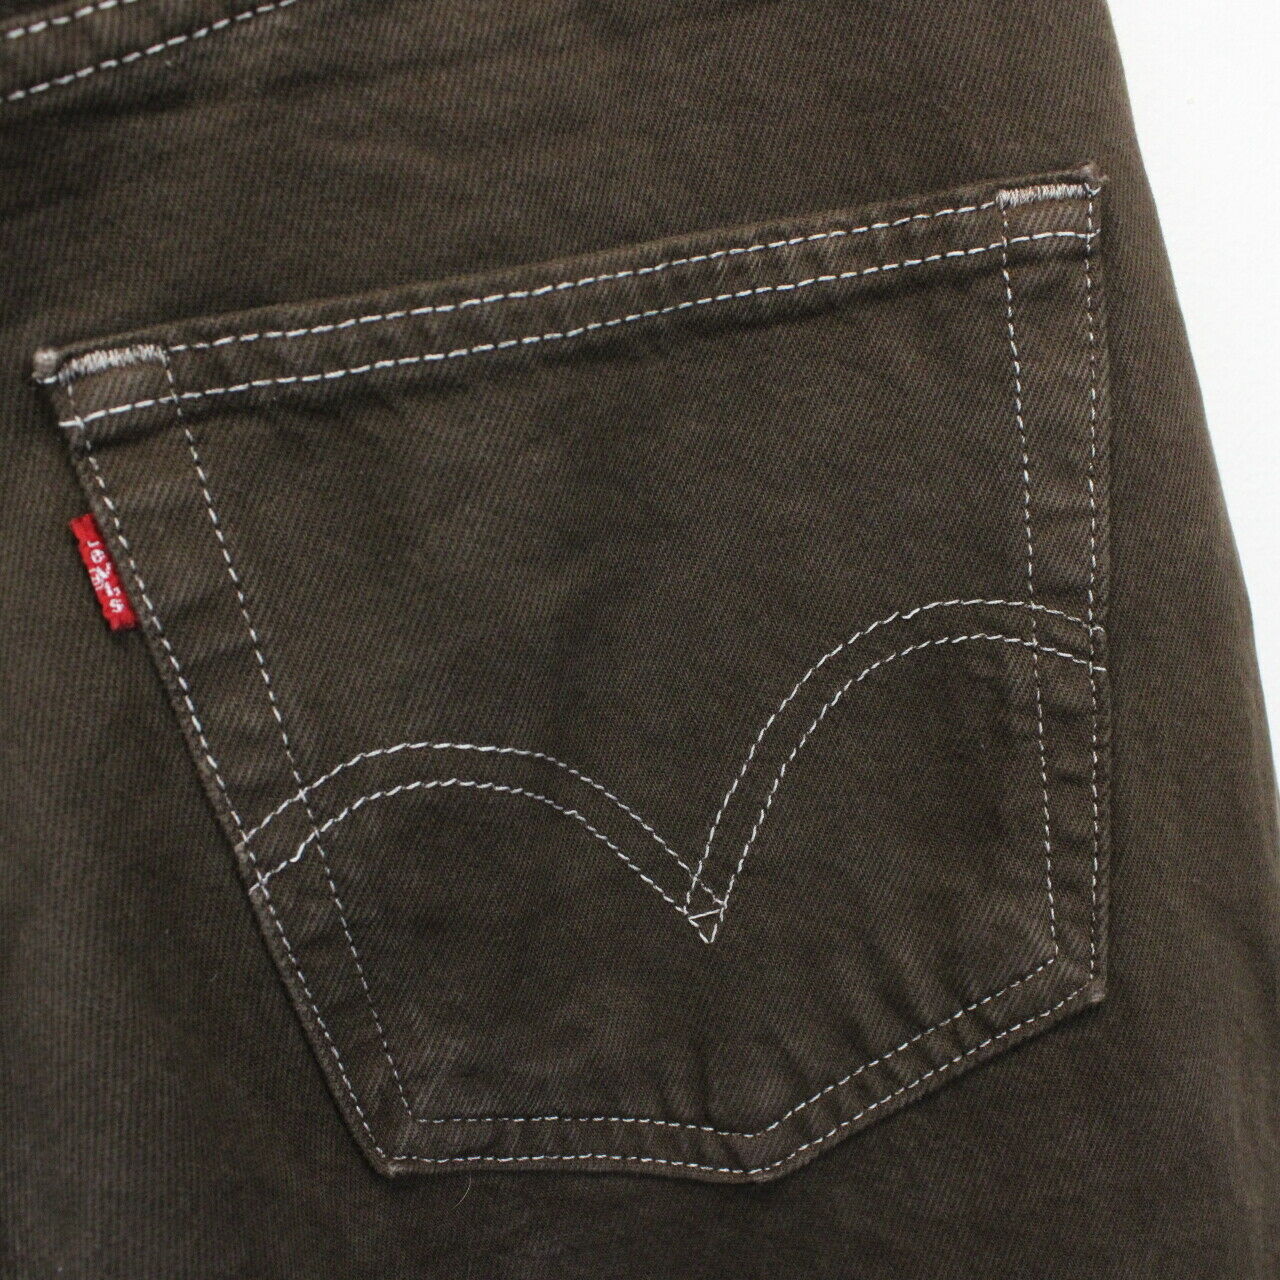 LEVIS 501 Jeans Brown | W36 L27